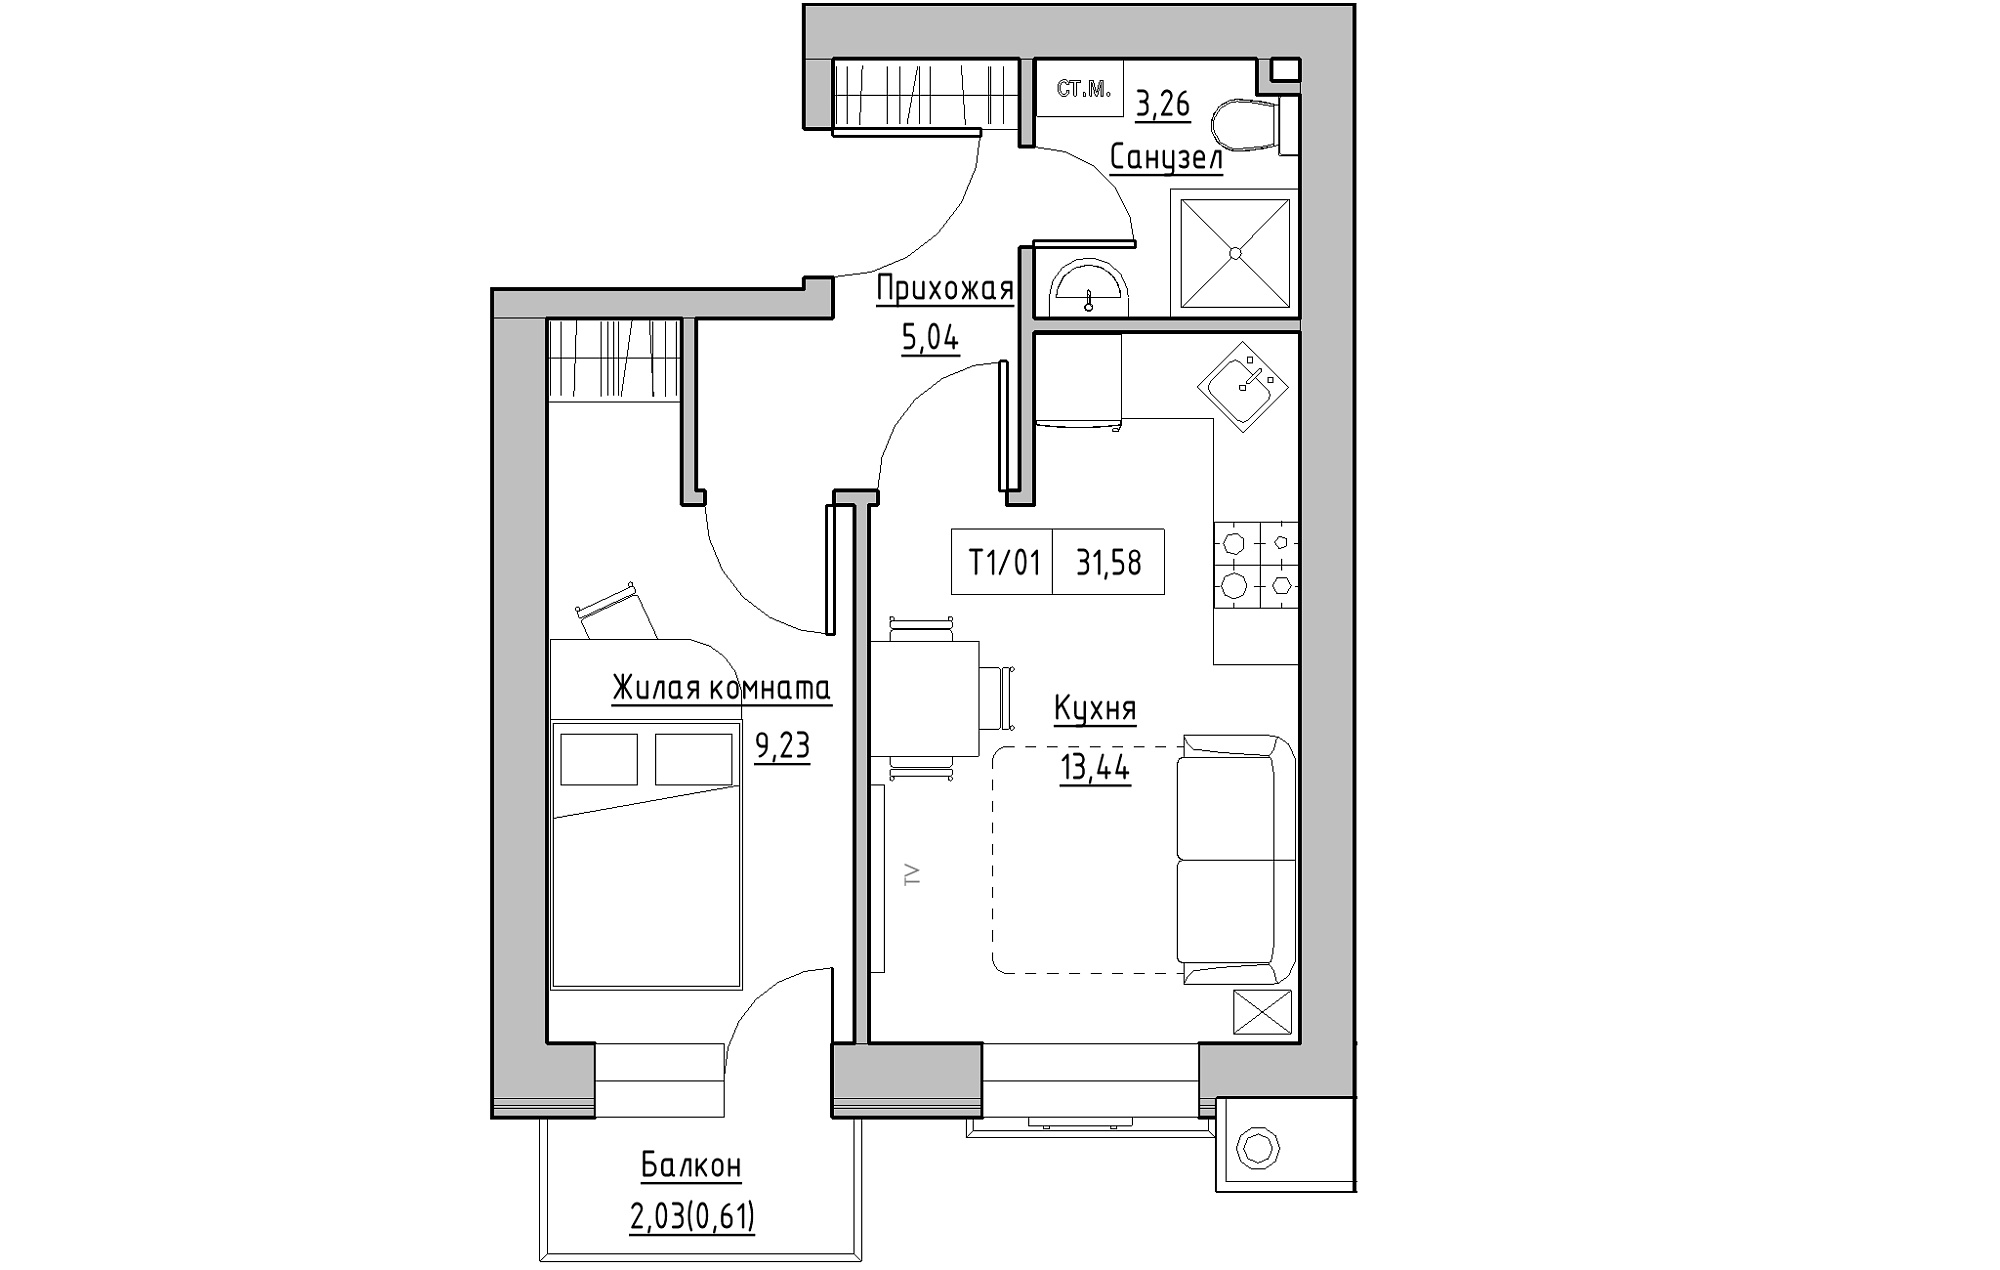 Планировка 1-к квартира площей 31.58м2, KS-013-03/0011.